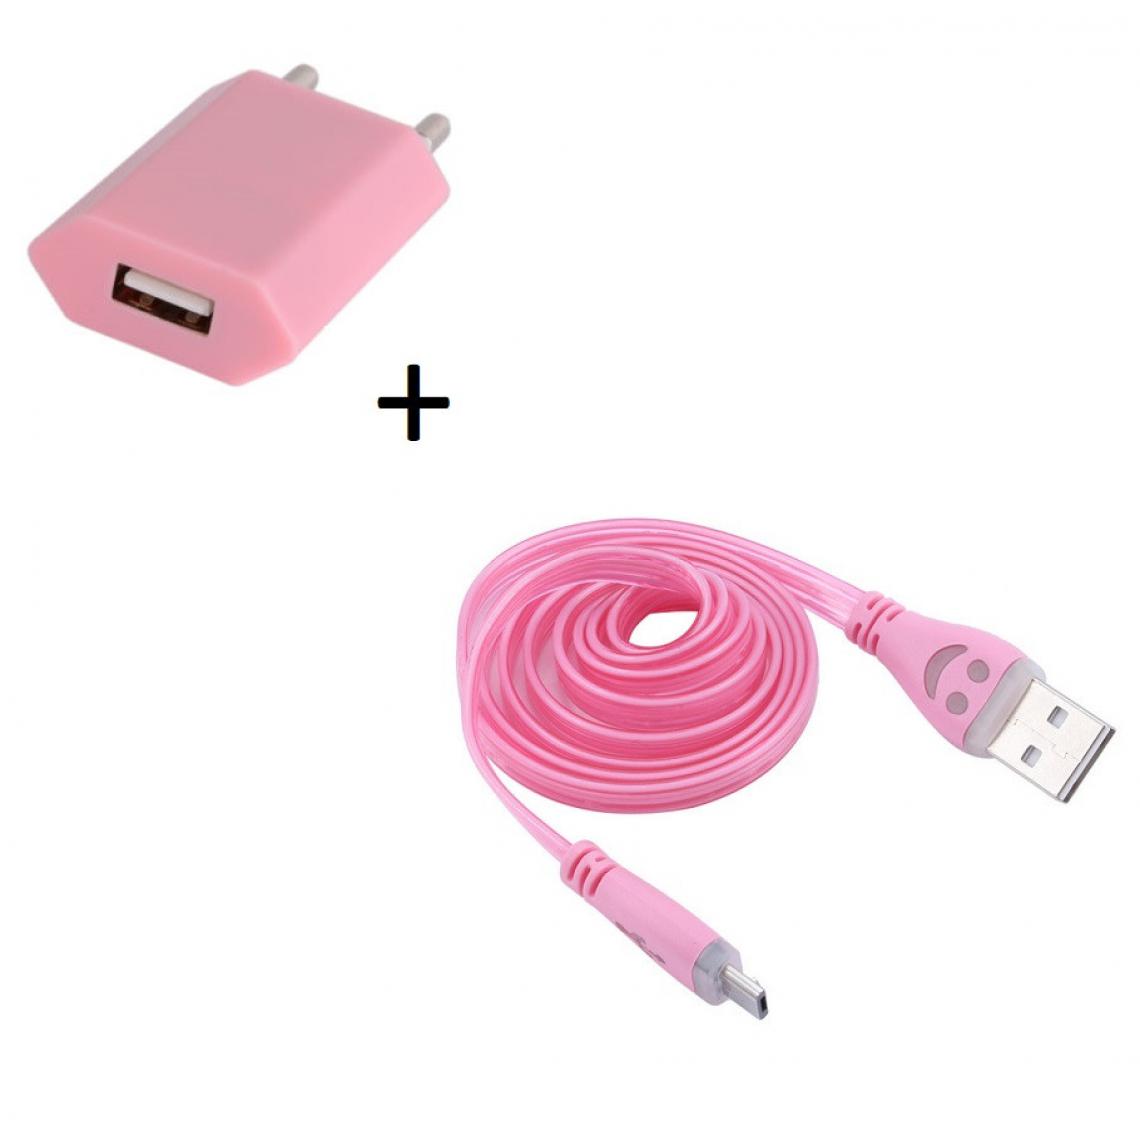 Shot - Pack Chargeur pour Enceinte Bose SoundWear Companion Smartphone Micro USB (Cable Smiley LED + Prise Secteur USB) Android Connect (ROSE PALE) - Chargeur secteur téléphone